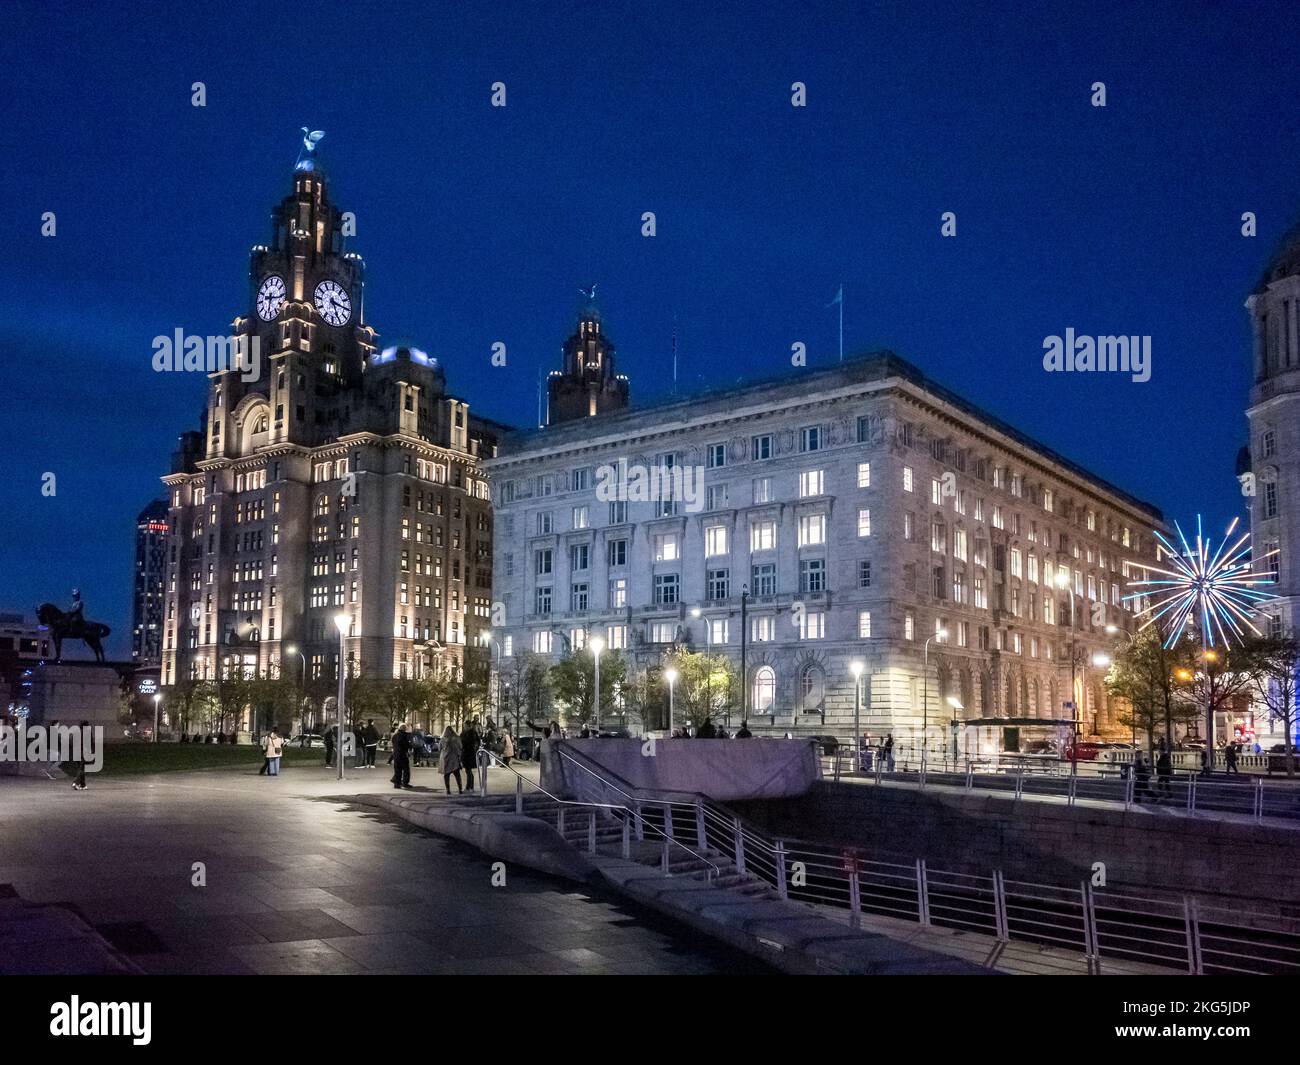 Scènes de rue de nuit à Liverpool de Pier Head en regardant vers les trois graces du foie, Cunard Shipping, et le port de Liverpool bâtiment Banque D'Images